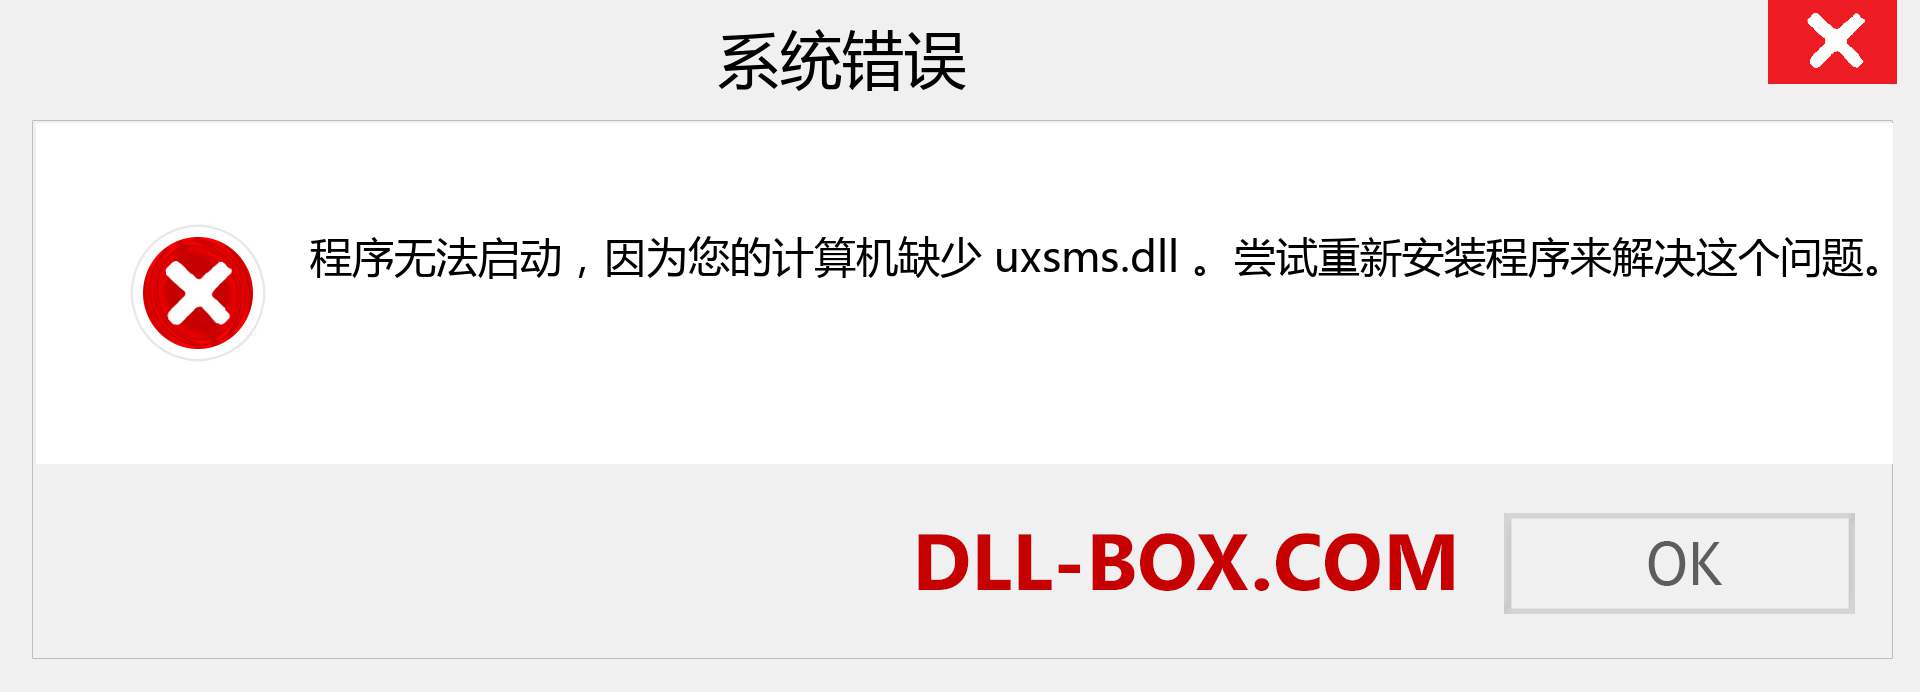 uxsms.dll 文件丢失？。 适用于 Windows 7、8、10 的下载 - 修复 Windows、照片、图像上的 uxsms dll 丢失错误